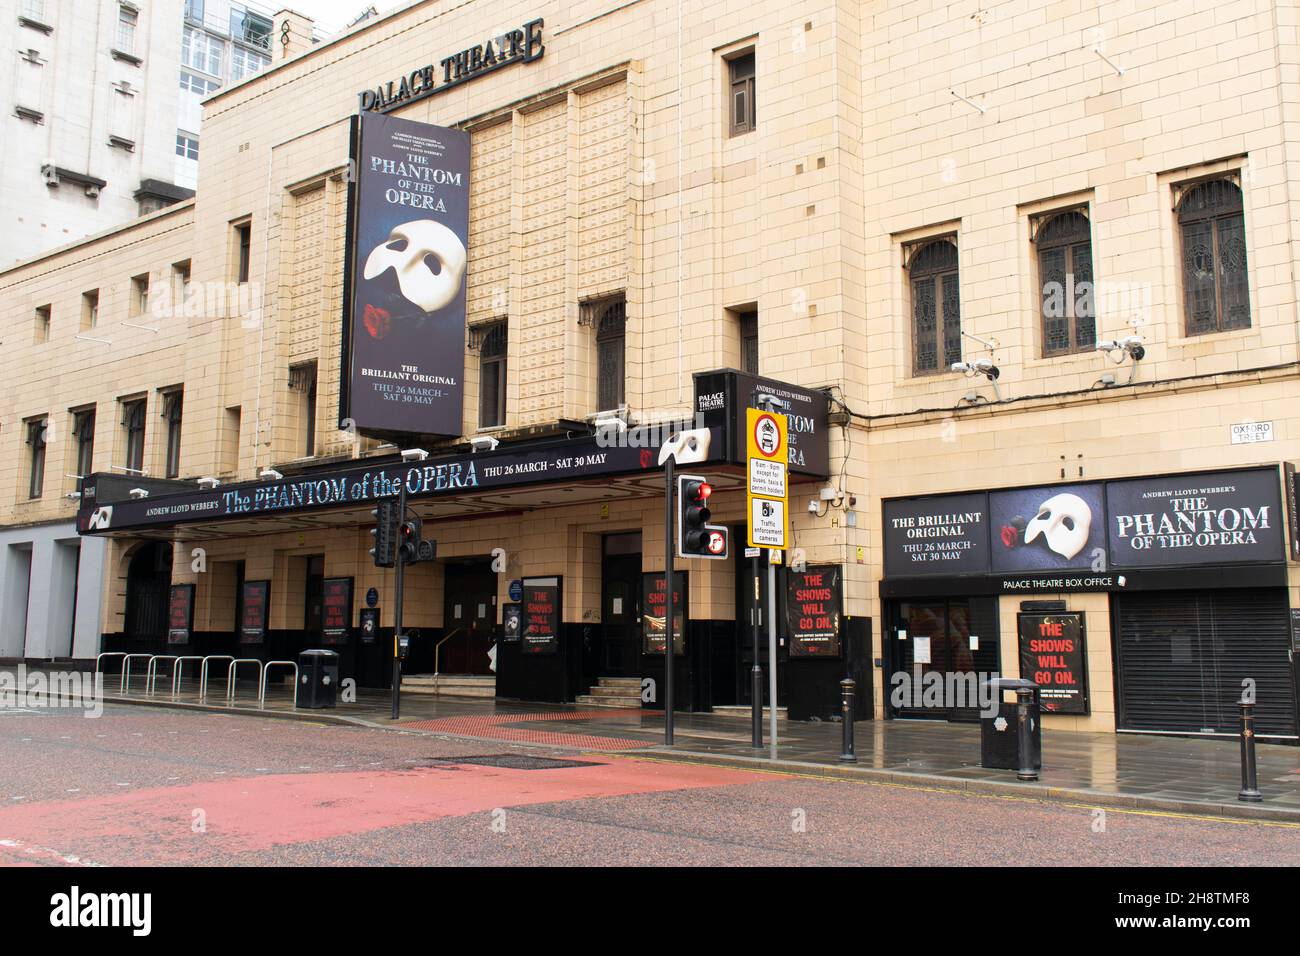 Palace Theatre, Manchester, Großbritannien, wurde während der nationalen Sperre in England geschlossen. Werbung für das Phantom der Oper März 2020. Oxford Street. Stockfoto